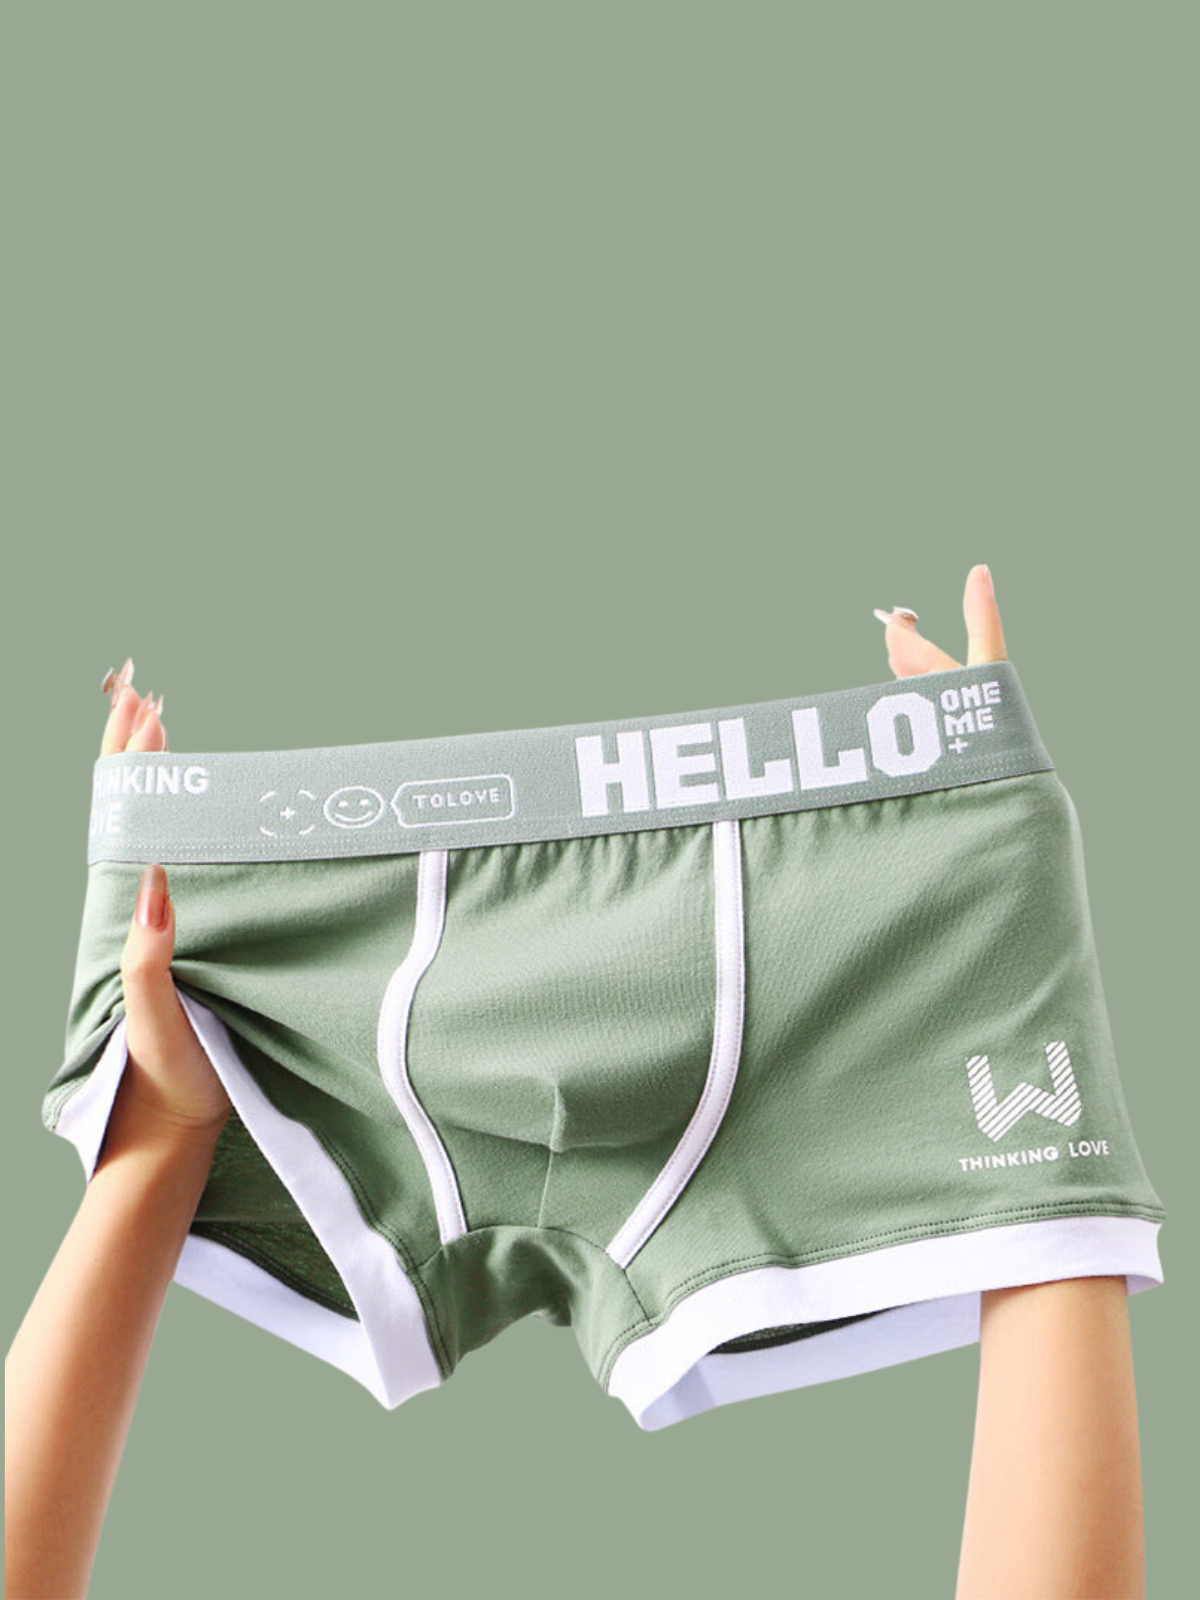 BODY WILD Hello Kitty Men's Underwear - Ocean Wave